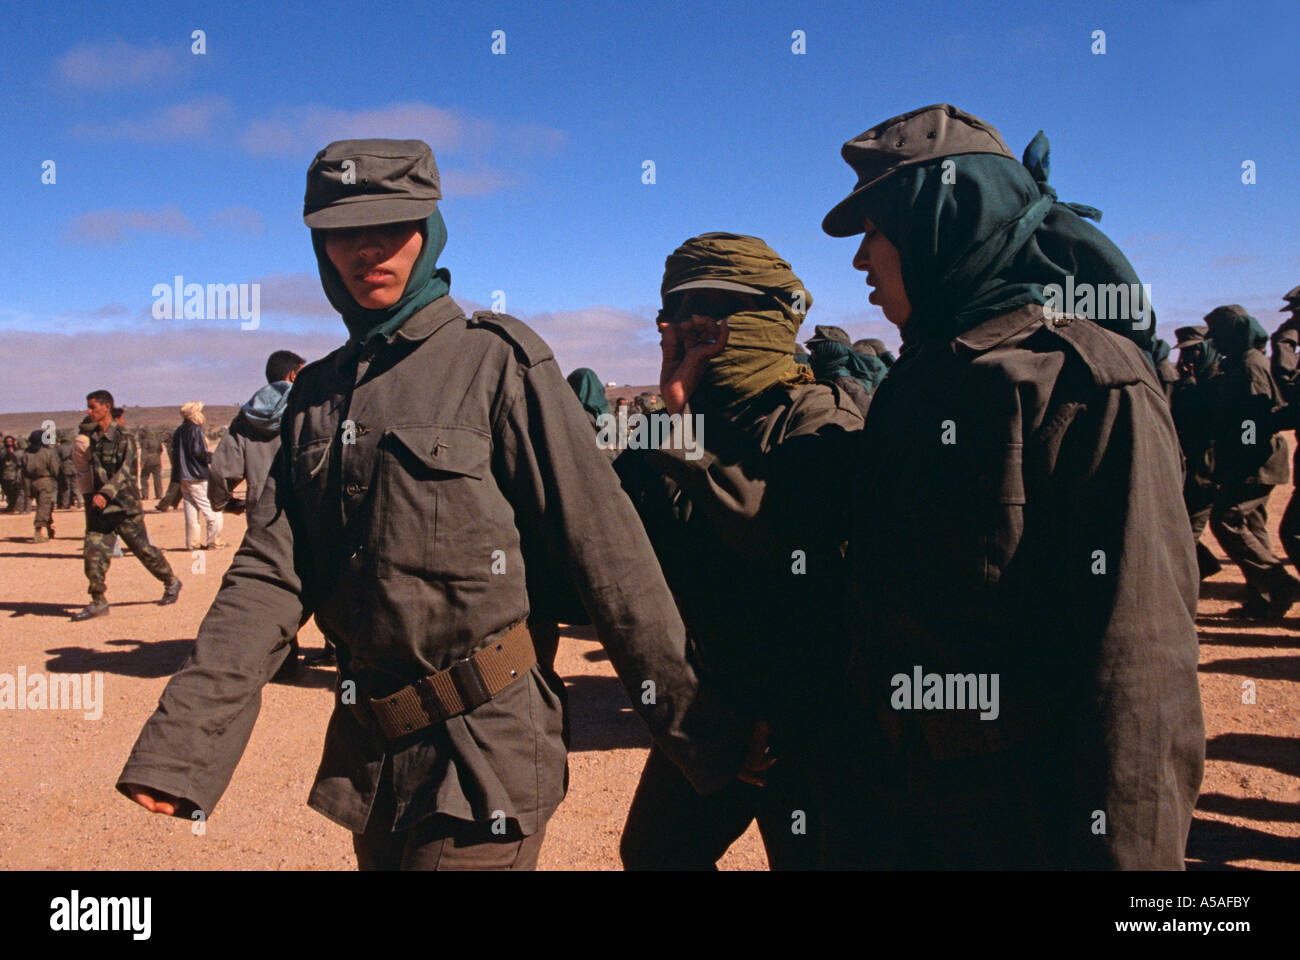 Les combattants du Front Polisario à Tindouf, l'ouest de l'Algérie Banque D'Images